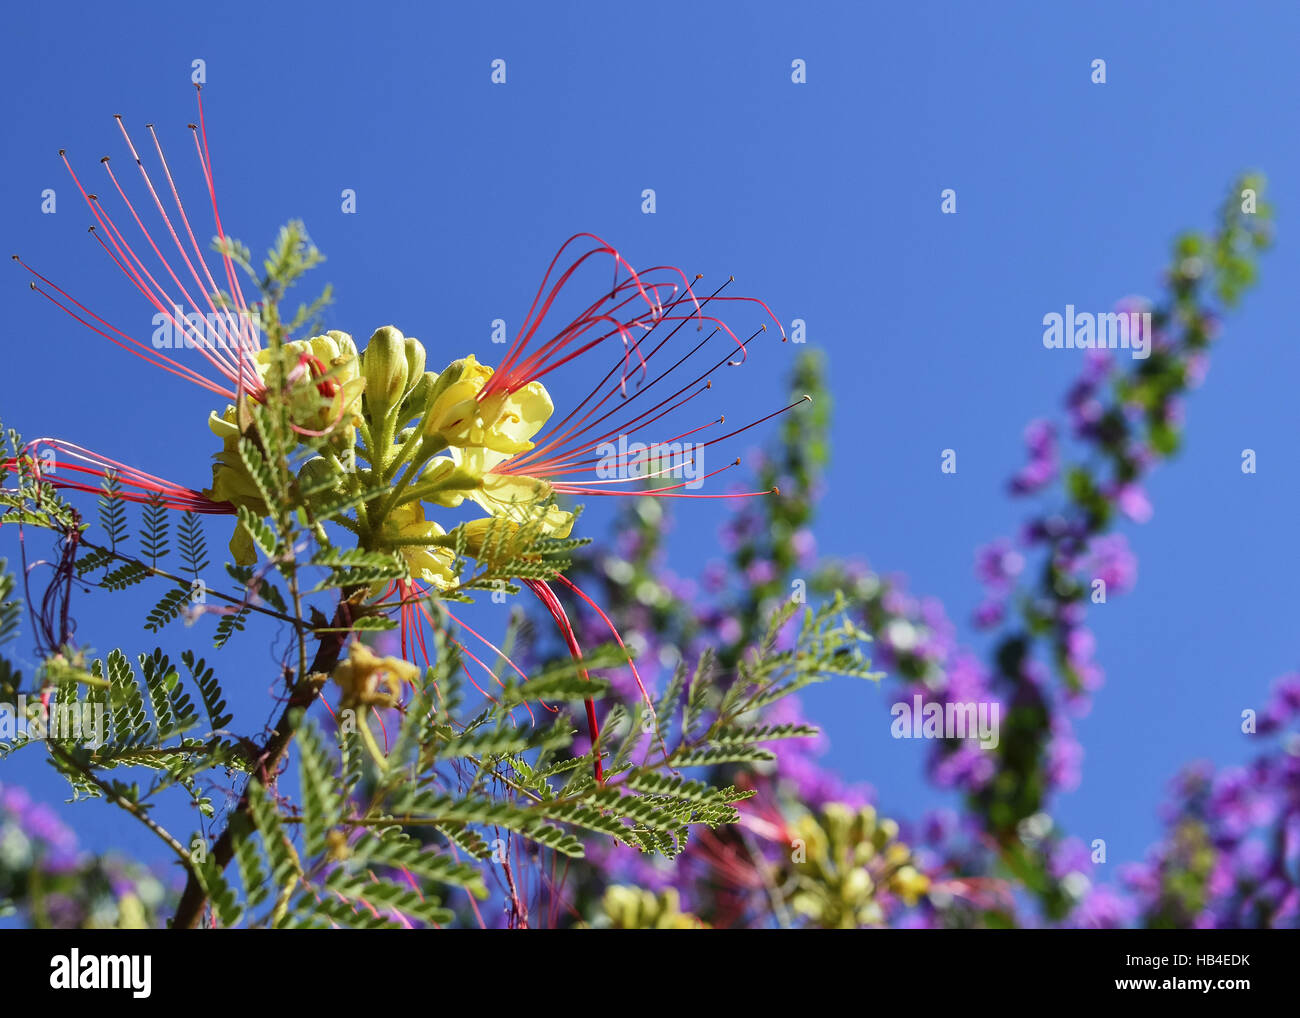 Fiore giallo con il rosso delle stringhe come una mimosa Foto Stock